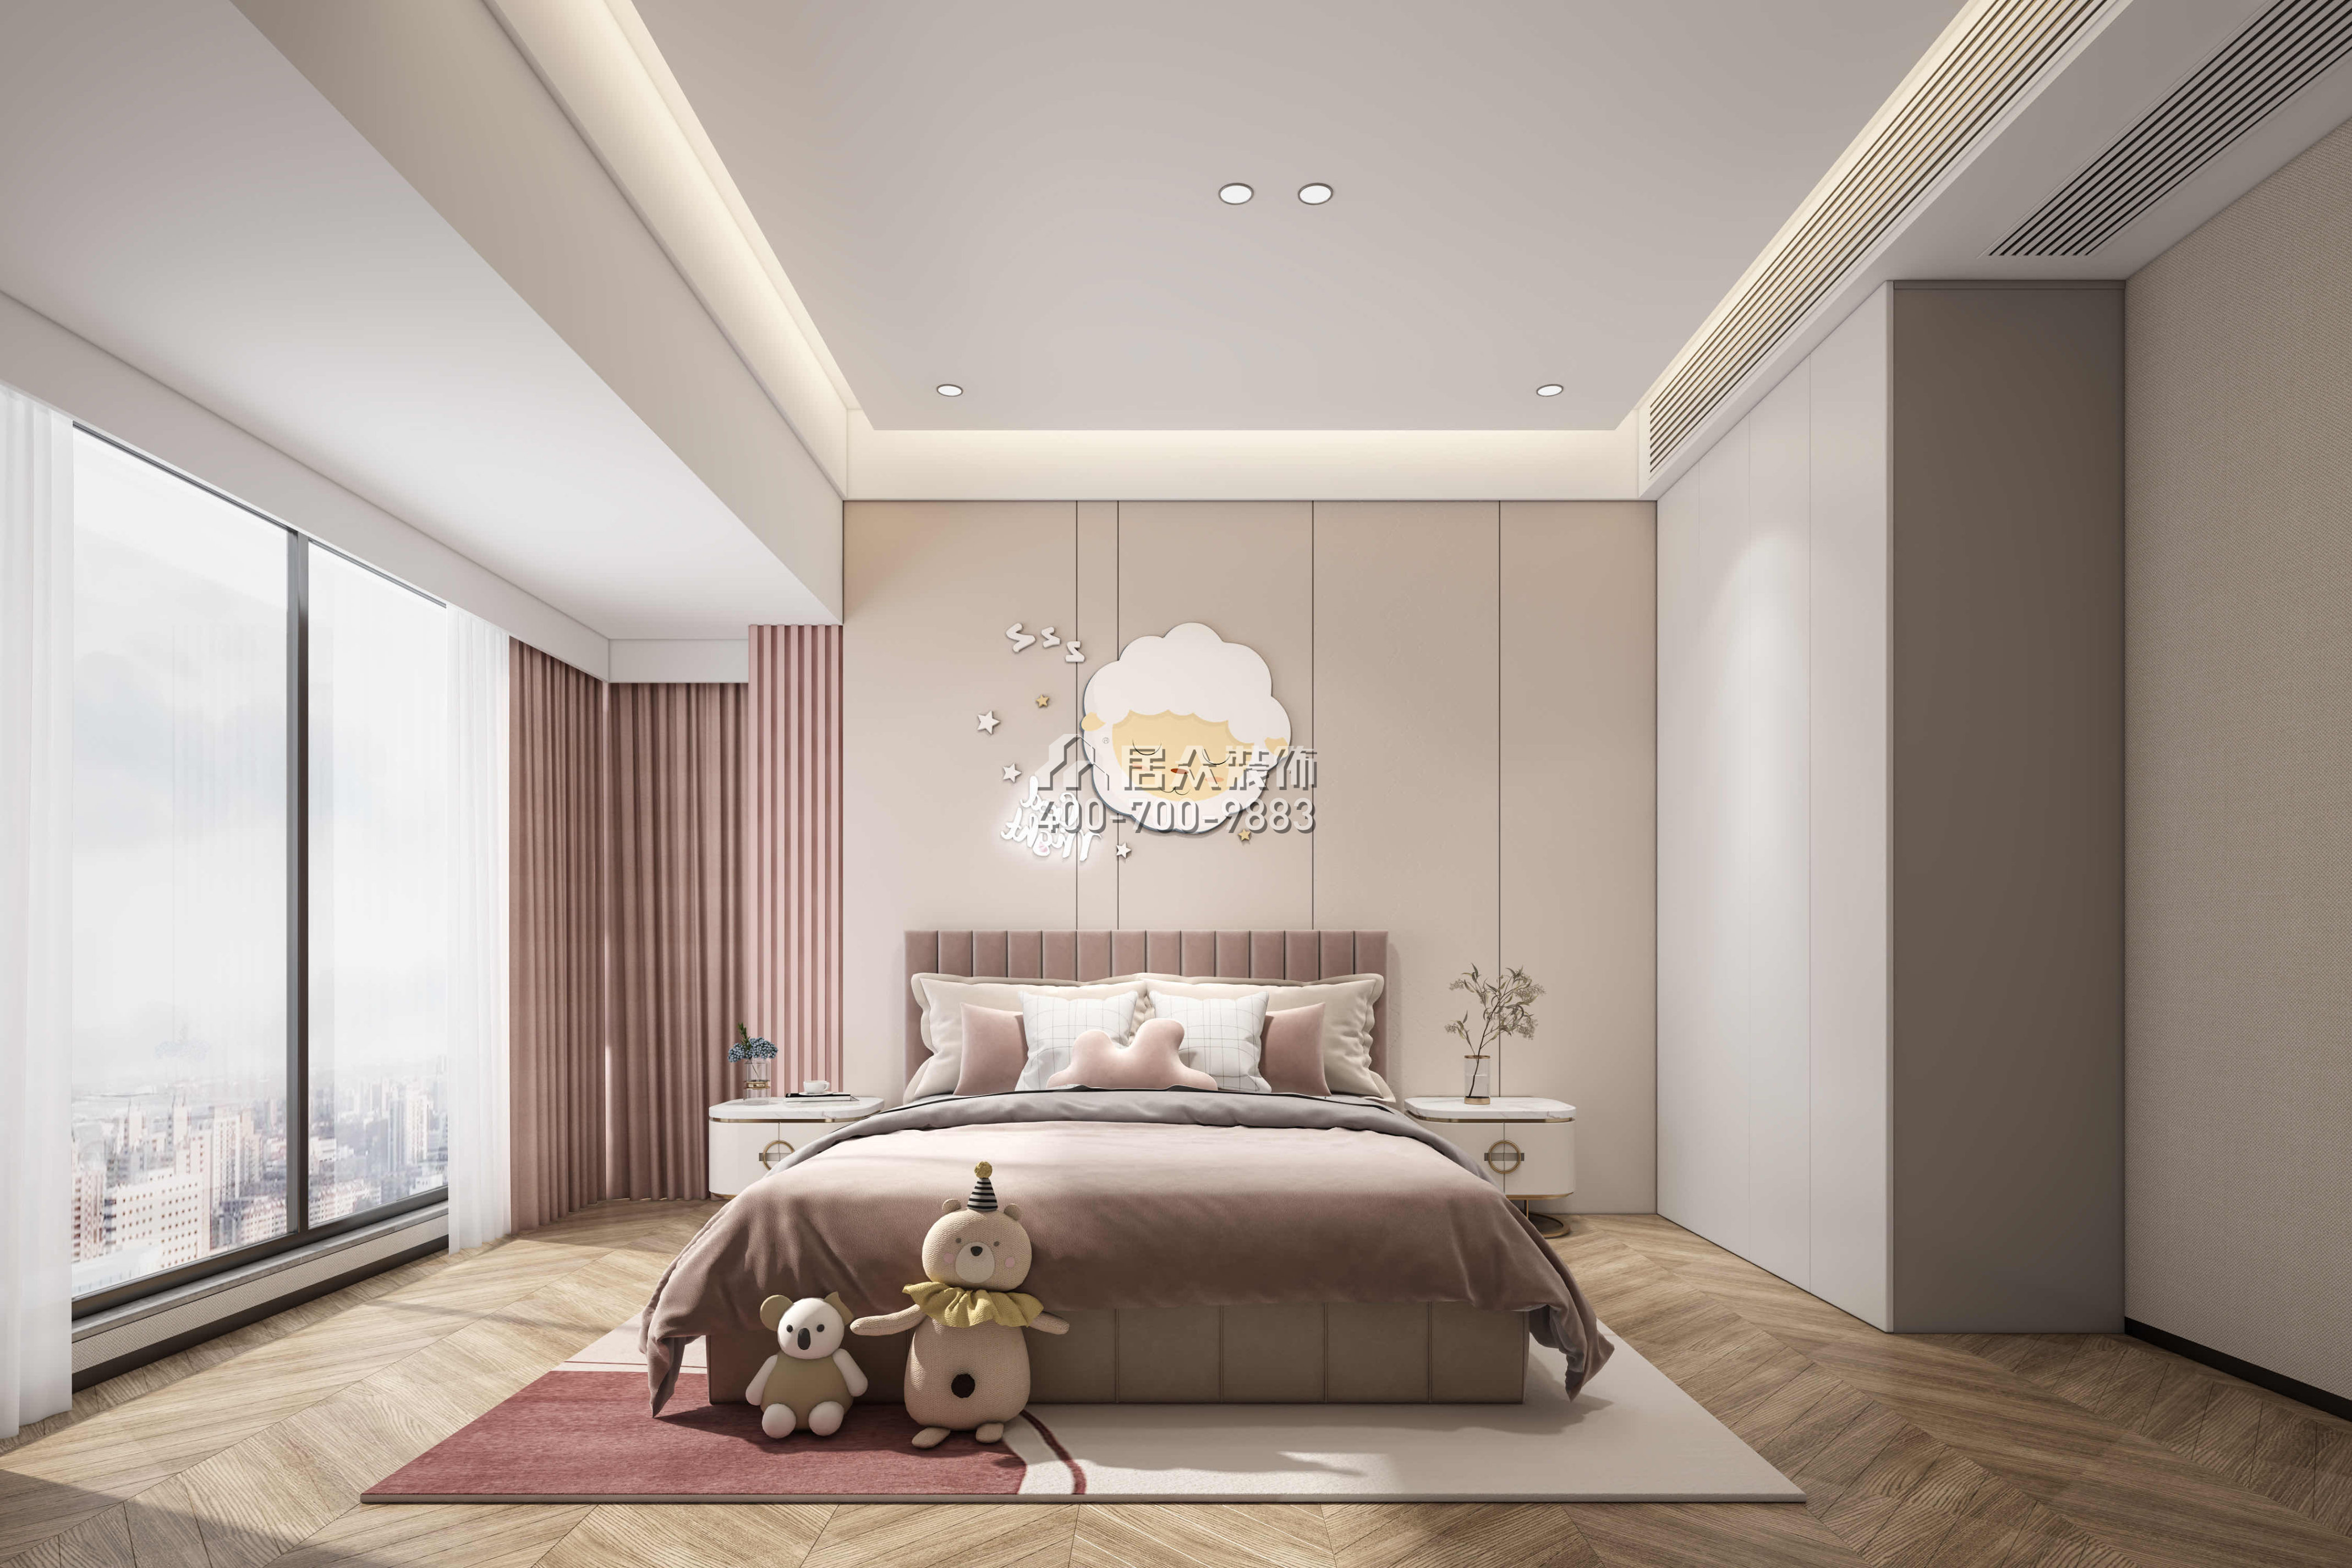 中旅国际公馆120平方米现代简约风格平层户型卧室装修效果图